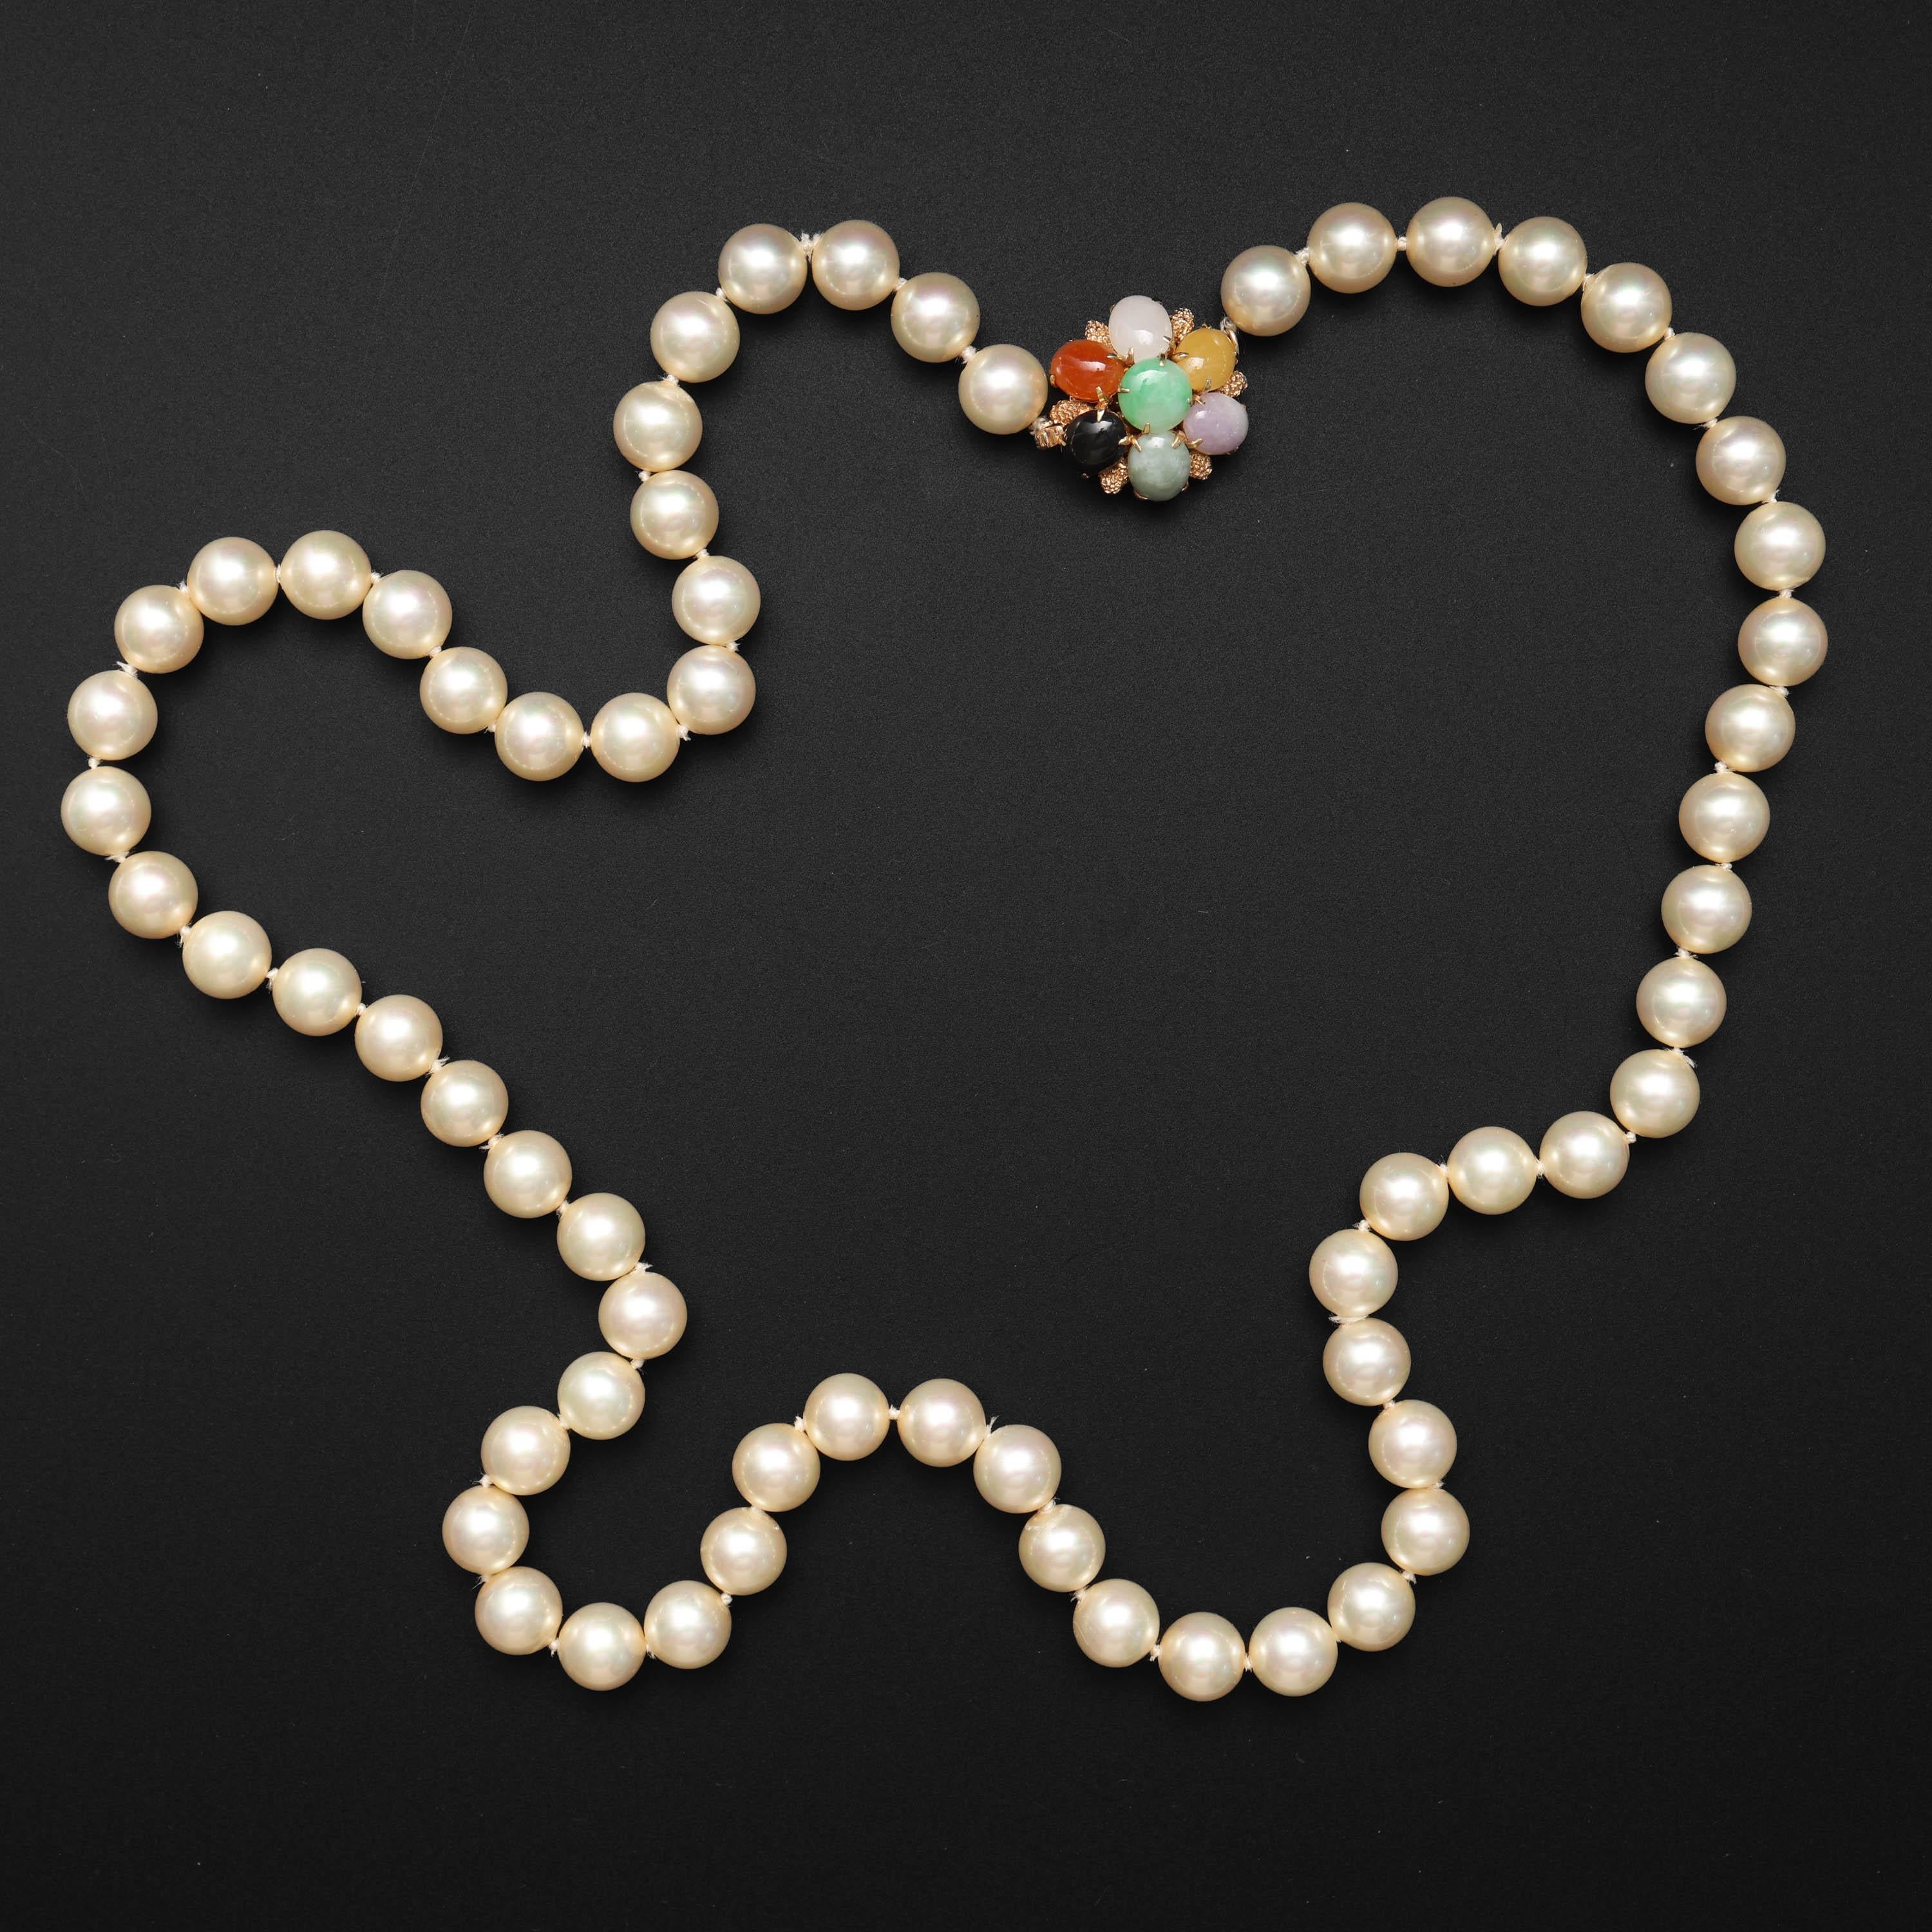 Ce collier de perles est doté d'un fermoir en jade certifié naturel et non traité. Les perles d'un blanc crémeux, presque dorées, mesurent en moyenne 8,9 mm - les perles de culture Akoya de plus de 8 mm sont considérées comme rares. Les perles